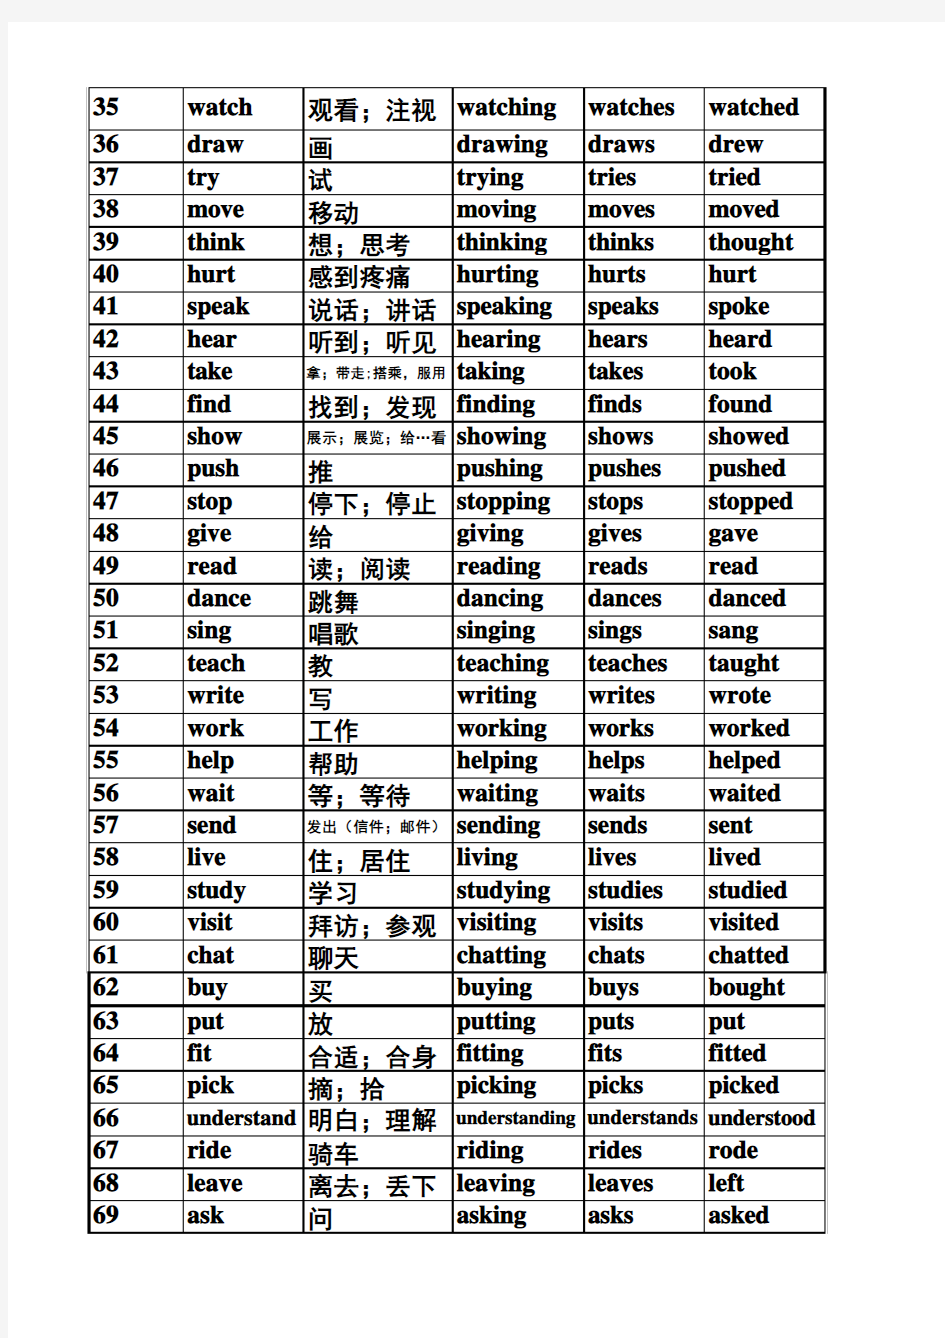 新译林版英语3A-6A所有行为动词的第三人称单数、现在分词、过去式汇总表